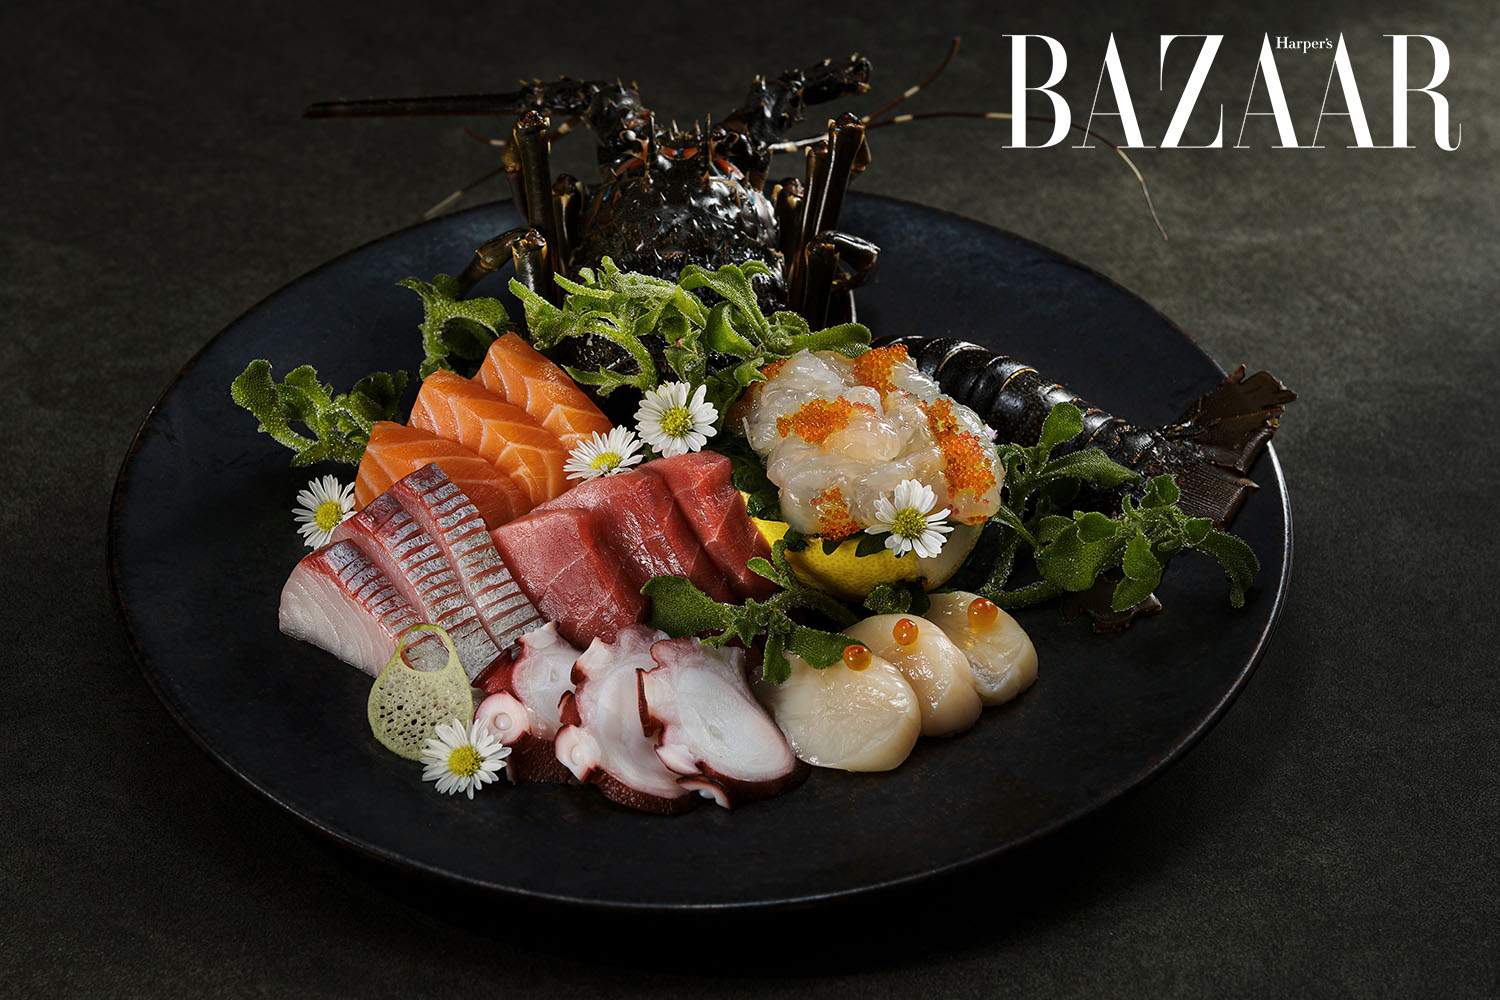 Harpers Bazaar yen sushi sake pub truong son 07 - Yen Sushi & Sake Pub khai trương địa điểm thứ 6 ở Tân Bình